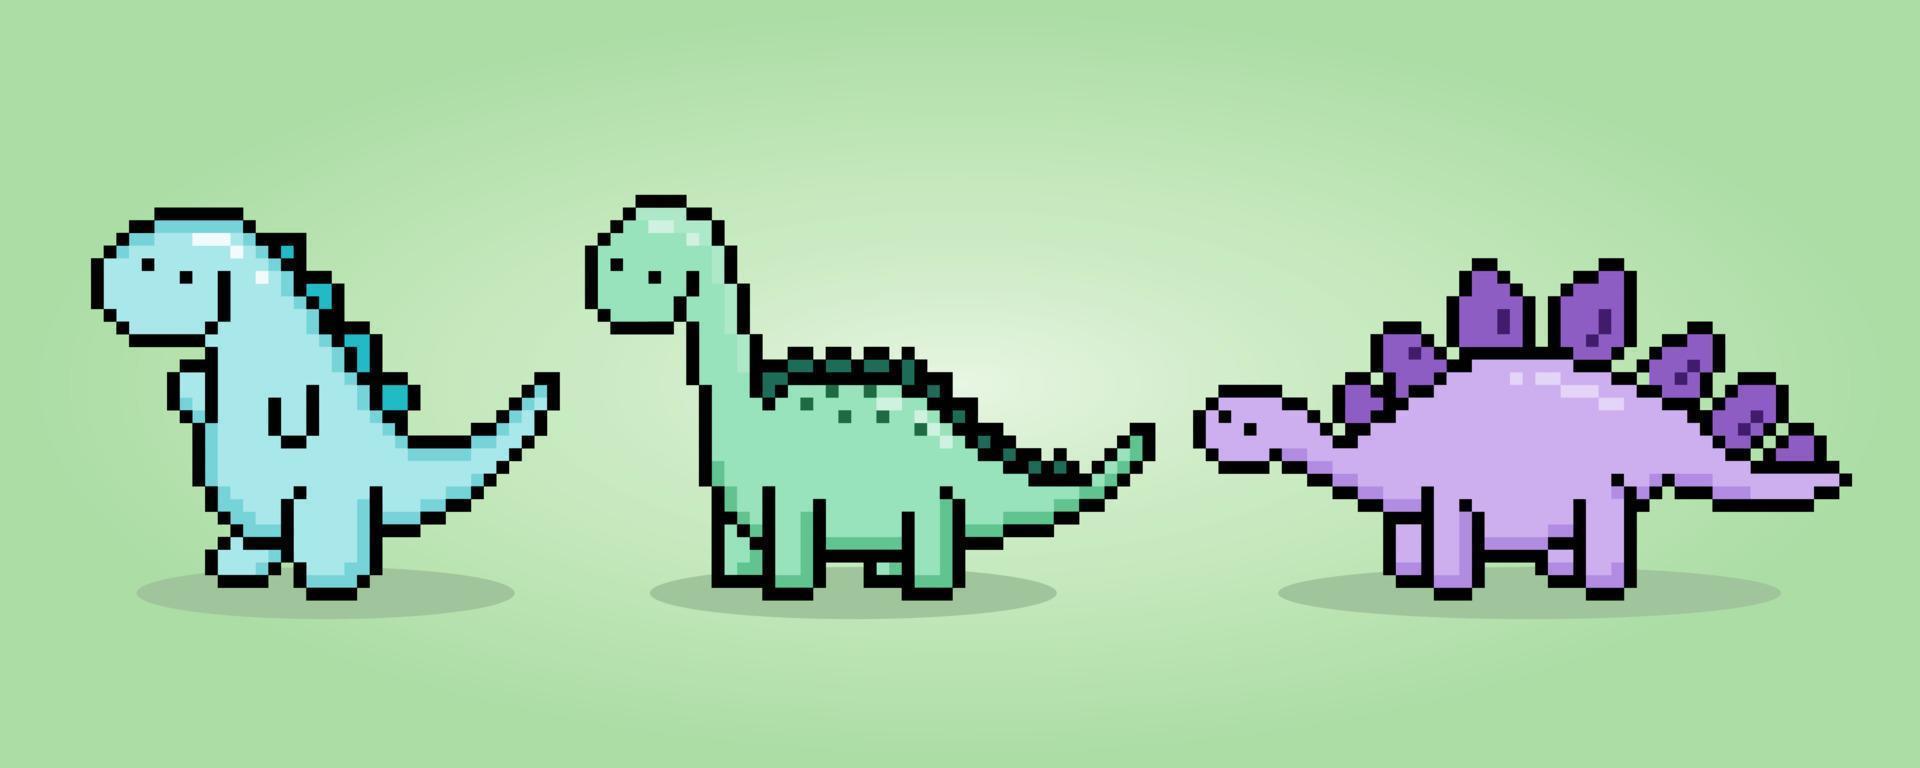 8 bit pixlar dinosaurie t Rex, brontosaurus, och stegosaurus. djur i vektor illustrationer